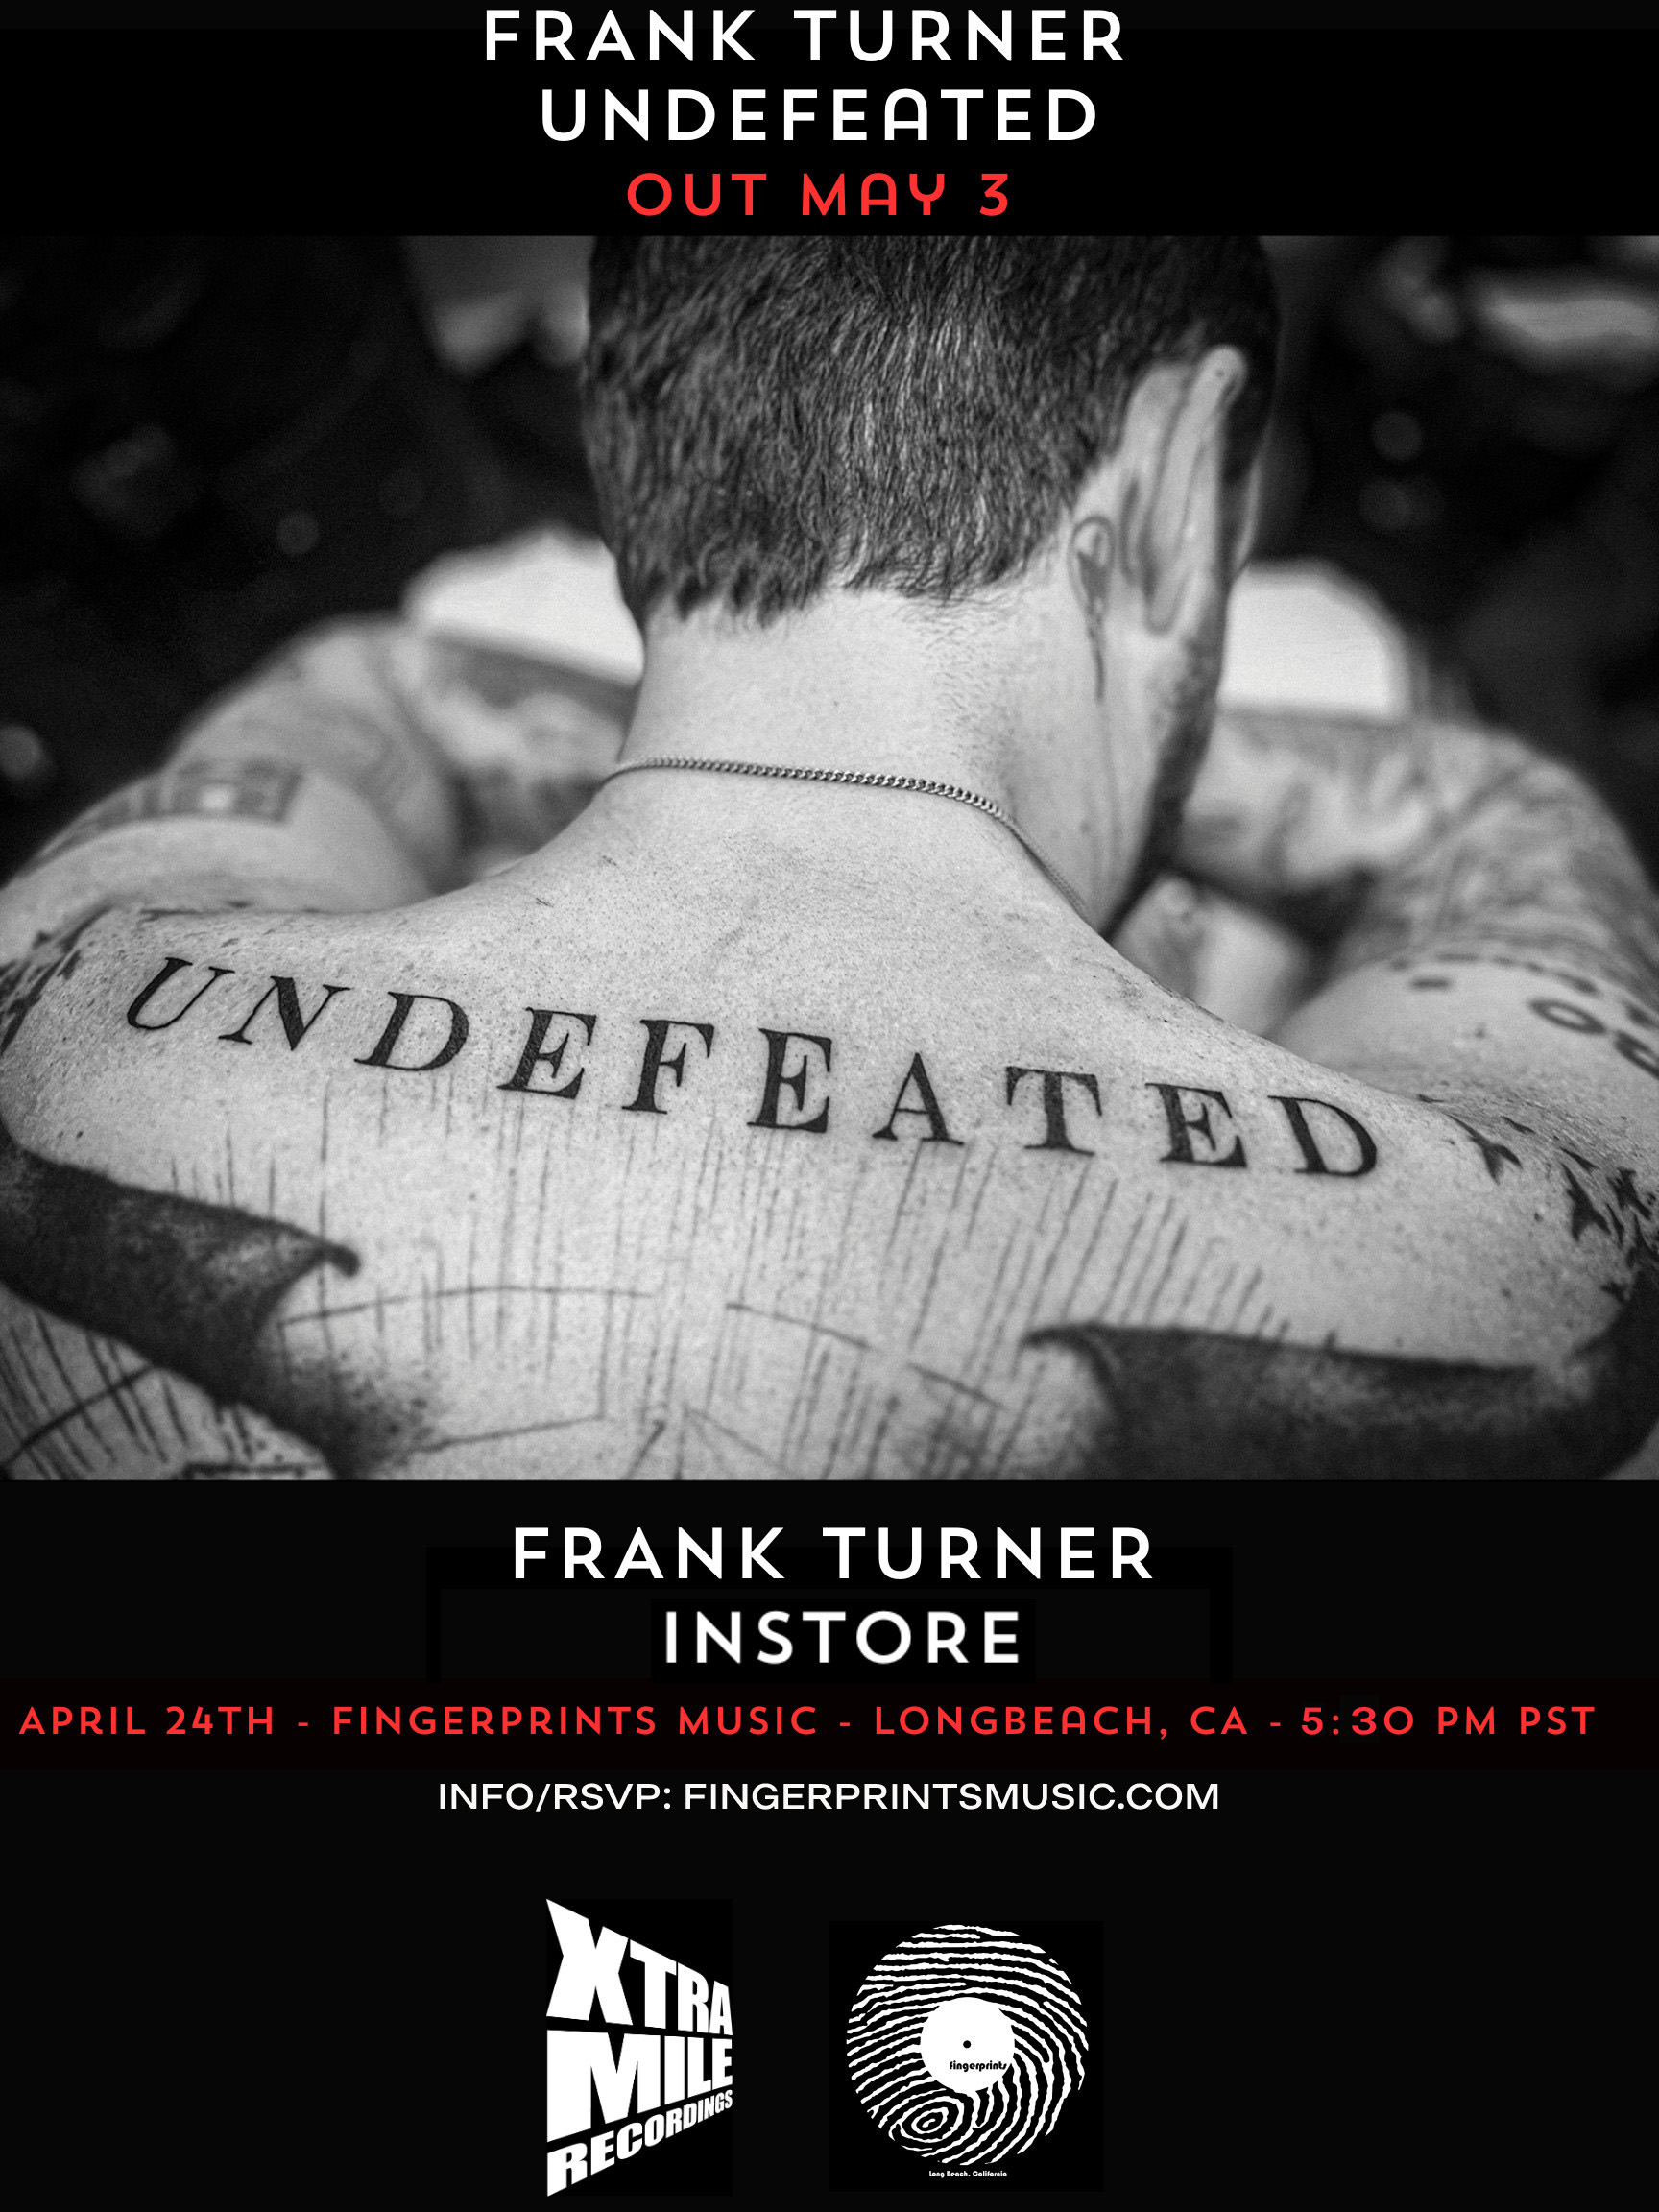 Frank Turner live at FINGERPRINTS 4/24